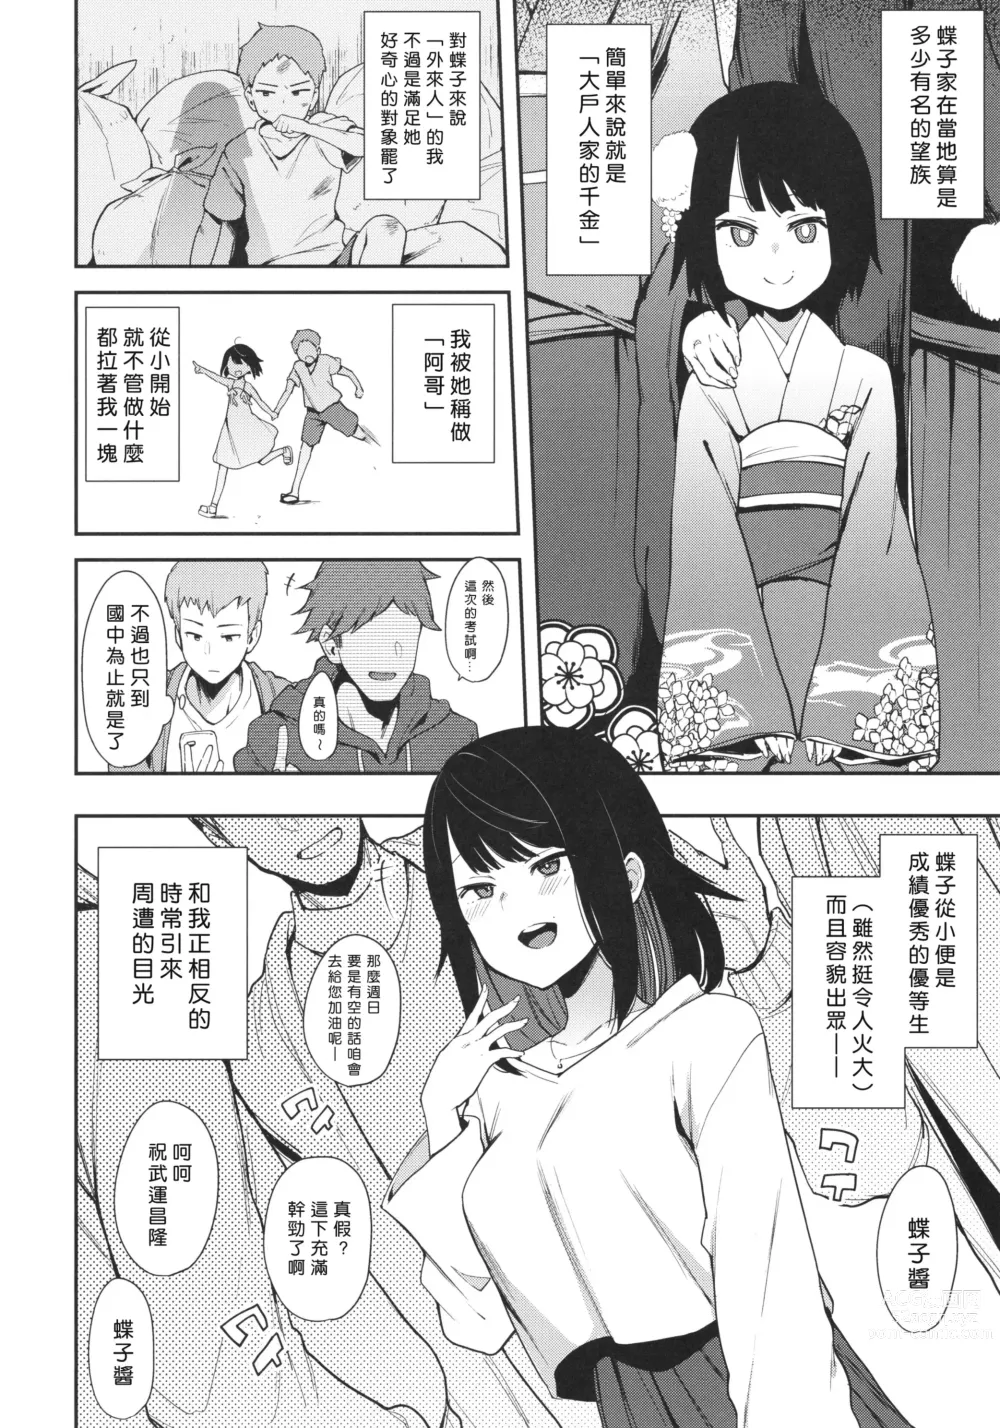 Page 5 of doujinshi Chouko I-V